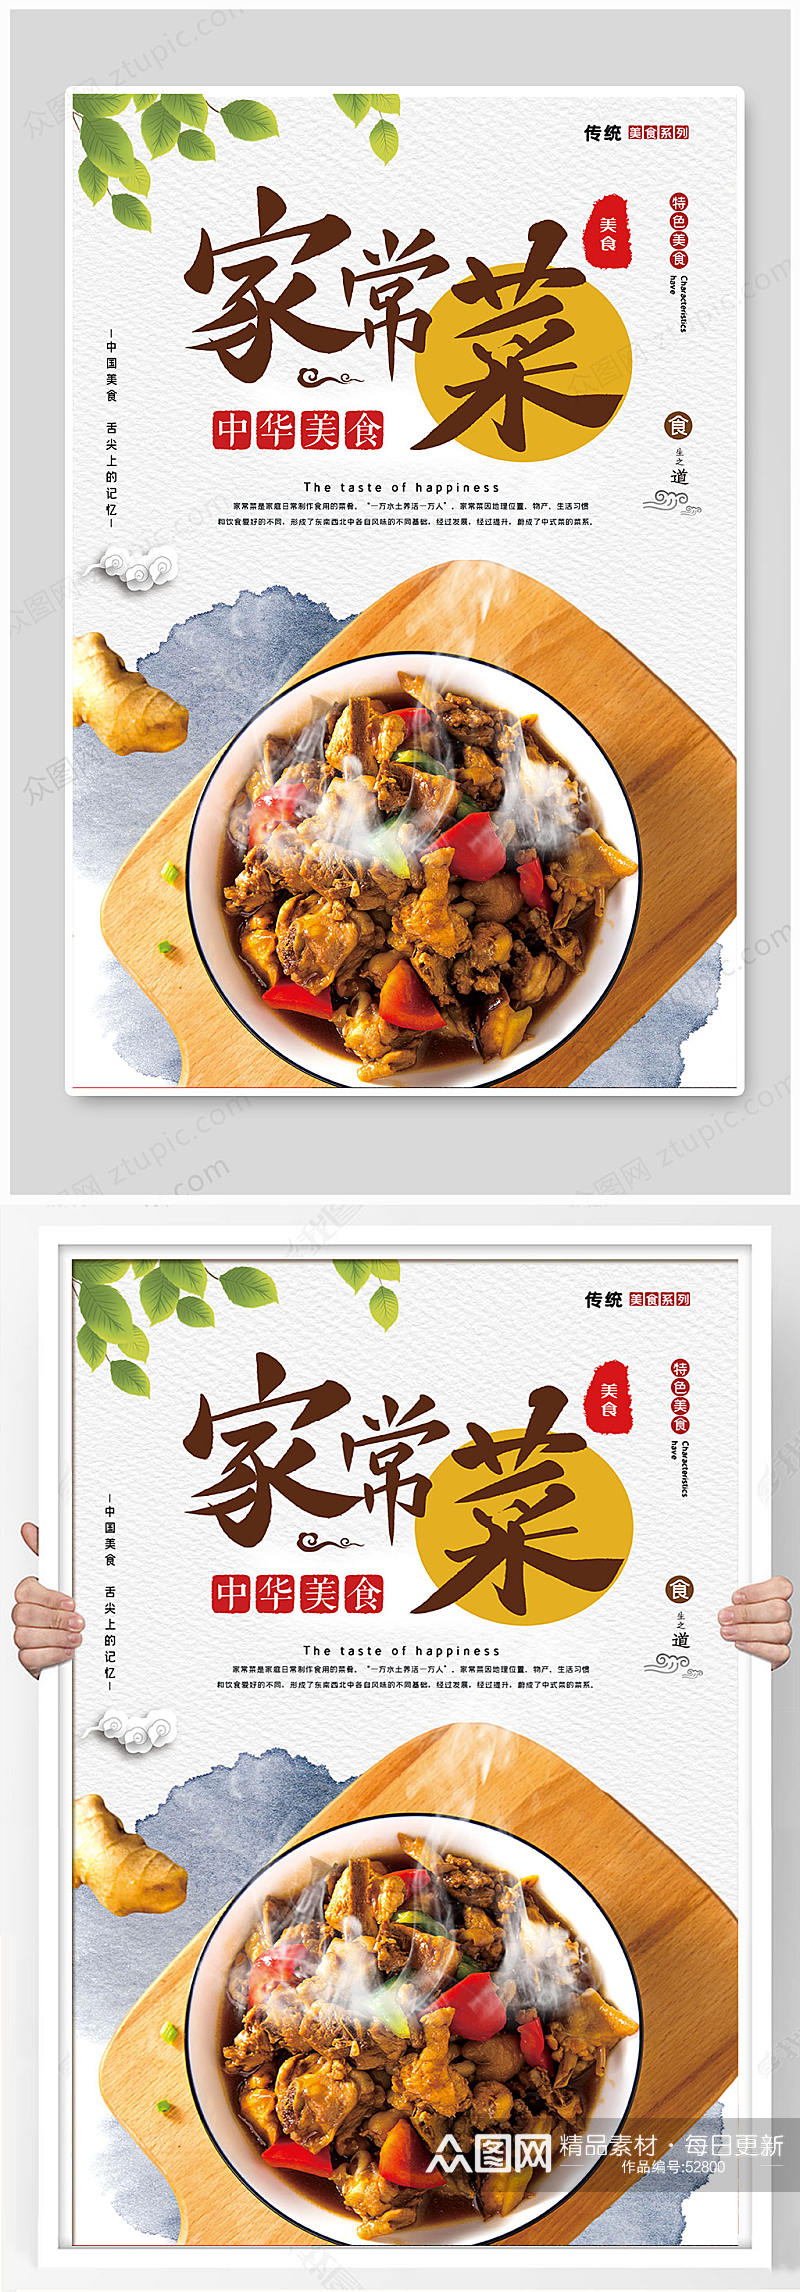 中国风美食家常菜海报设计素材